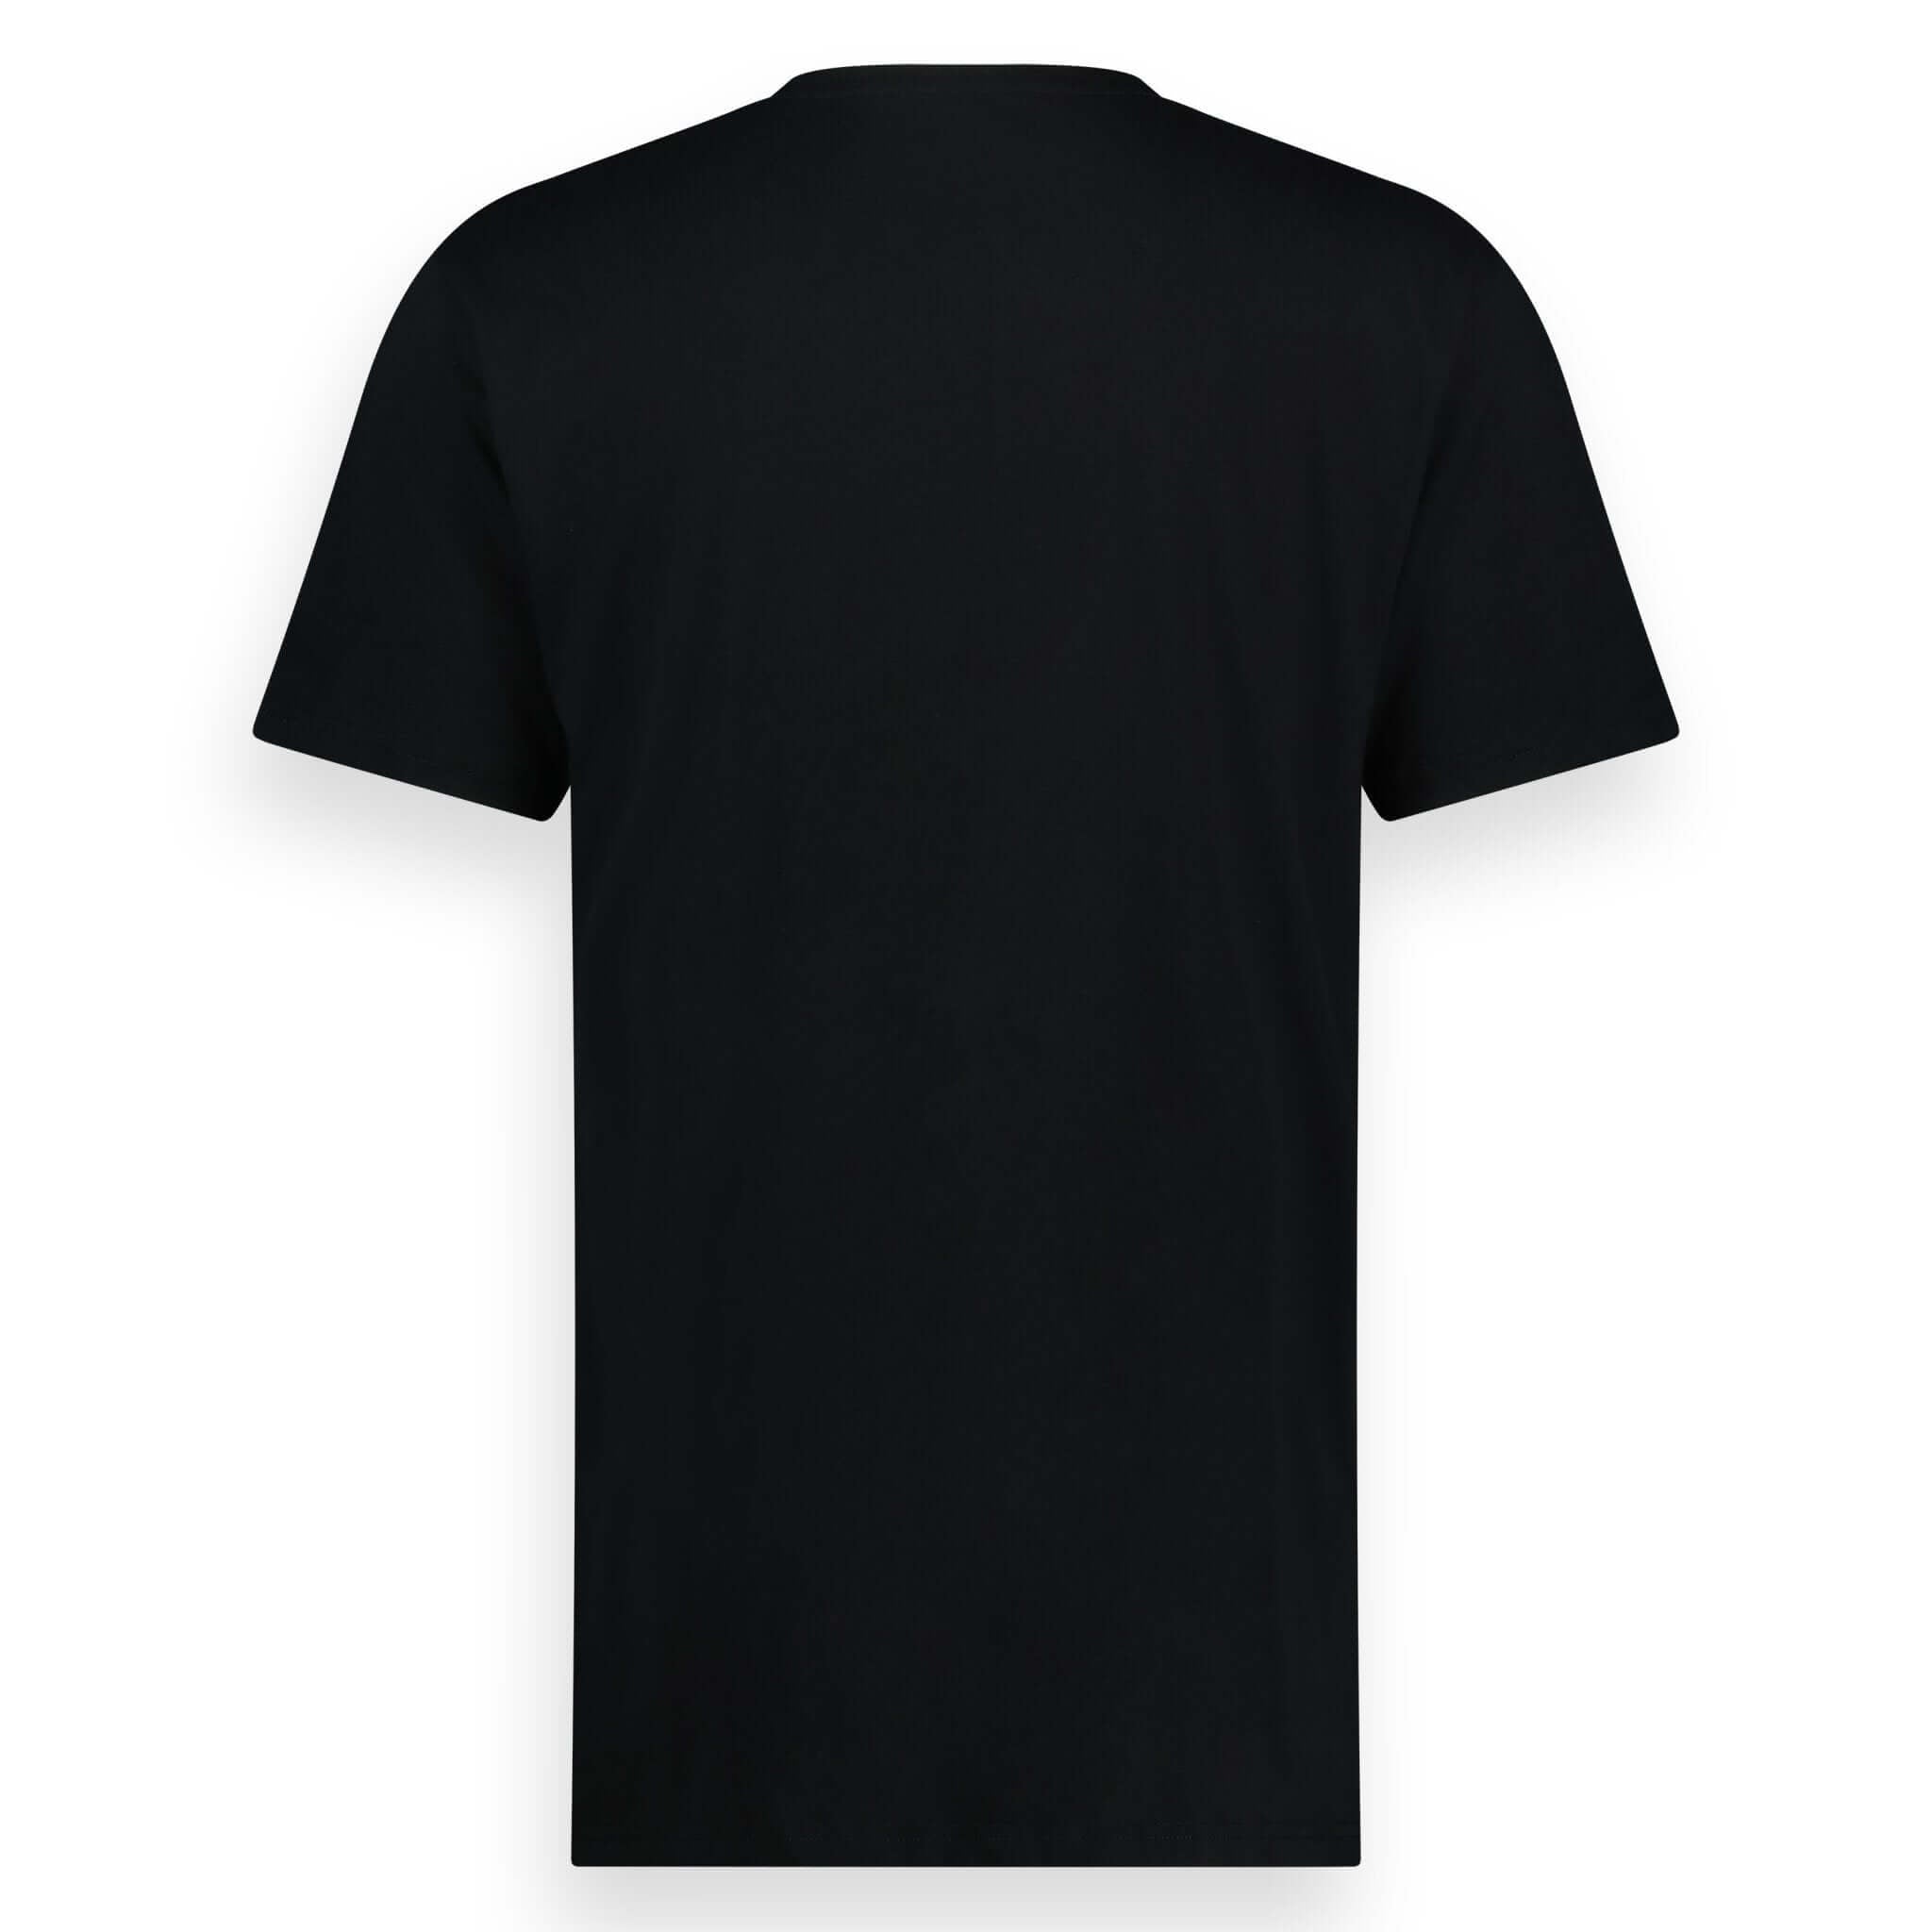 LEBASQ's Crew Neck T-Shirt Black - LebasQ